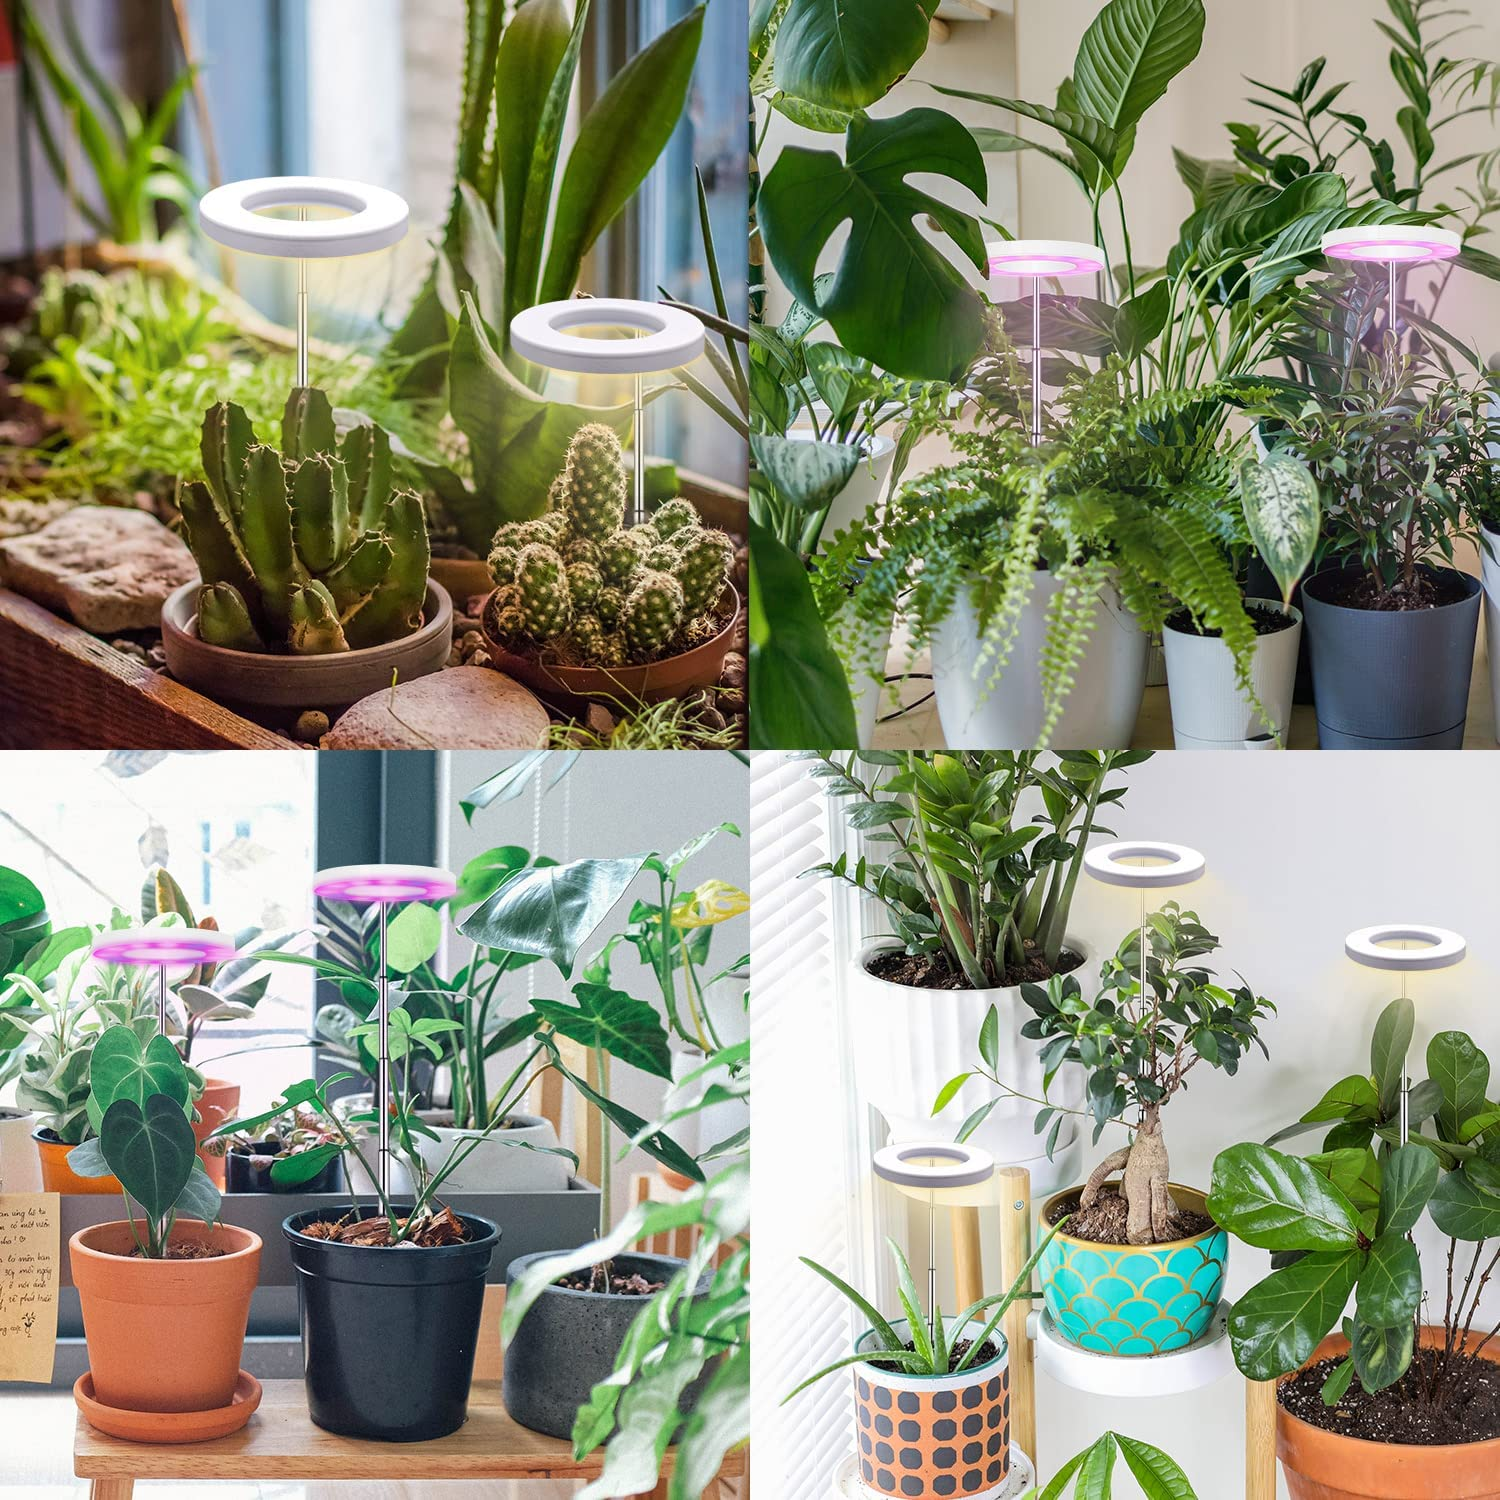 INF Kulturlampe Pflanzenbeleuchtung Topfpflanzen Pflanzenlampe für warmweiß/weiß